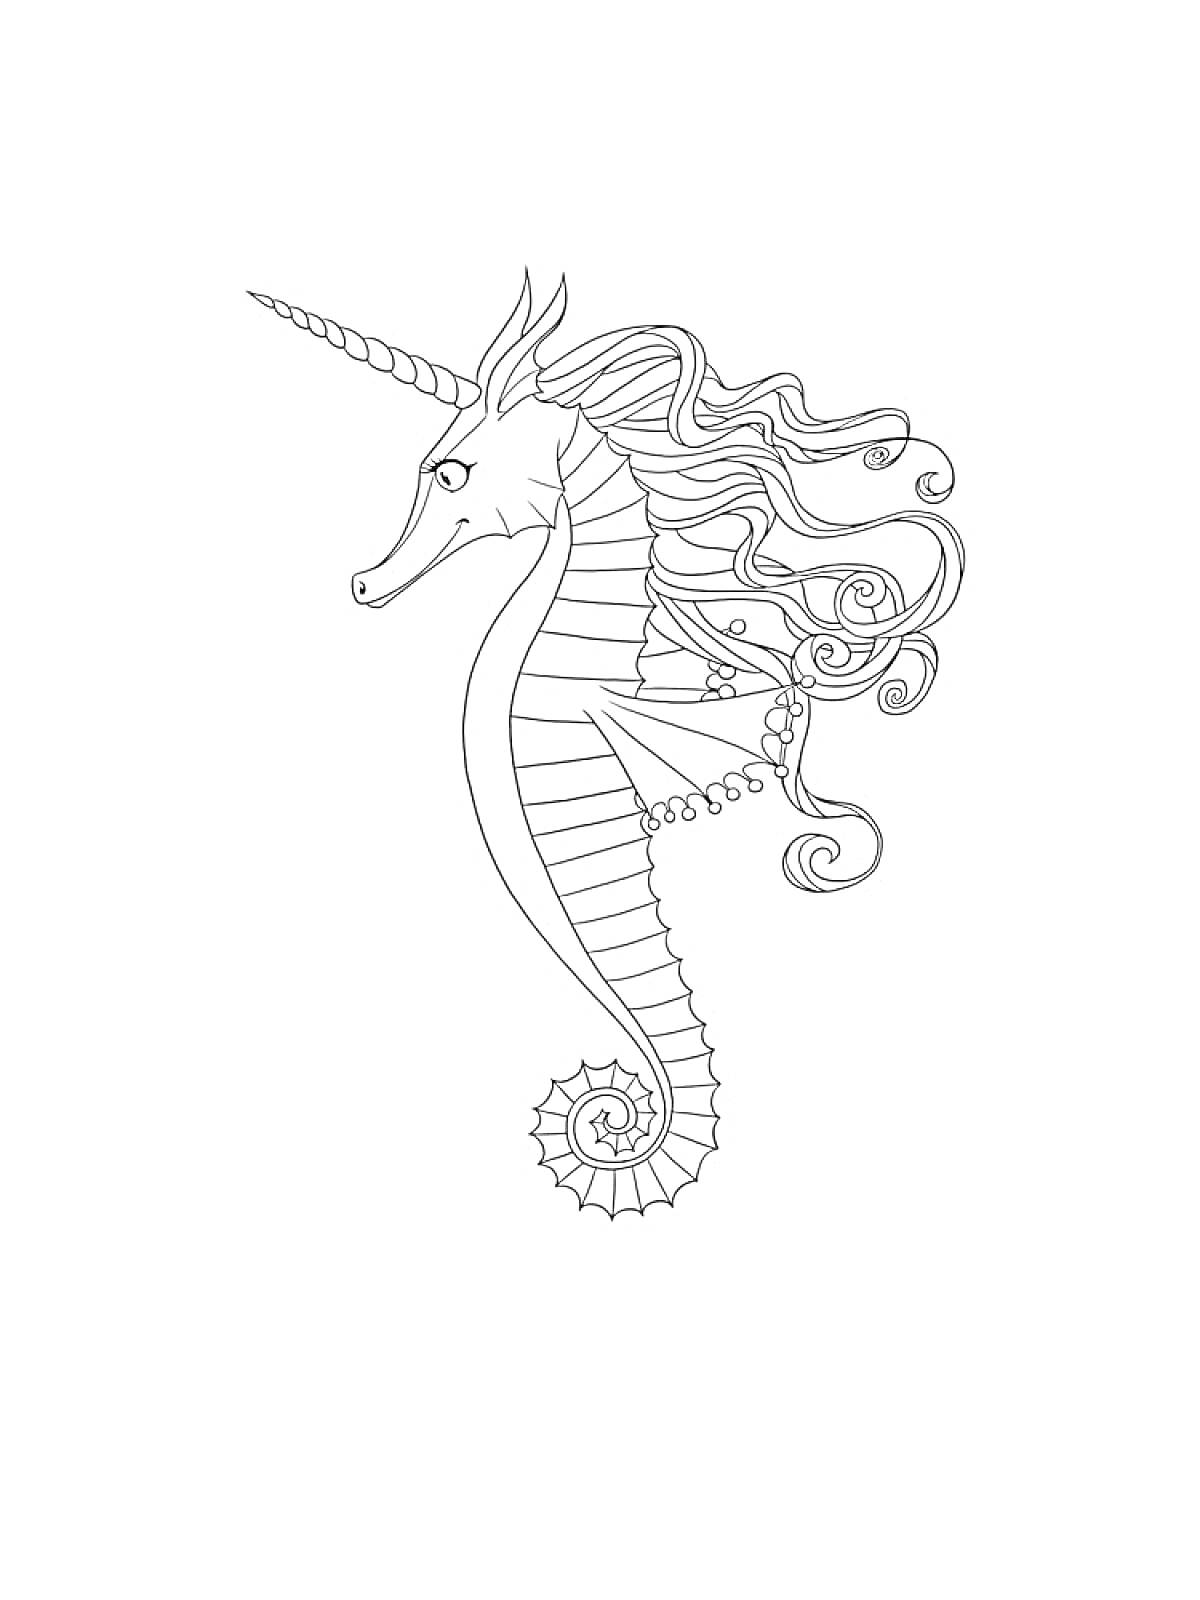 Раскраска Морской конек-единорог с волнистыми волосами и плавниками, витой хвост